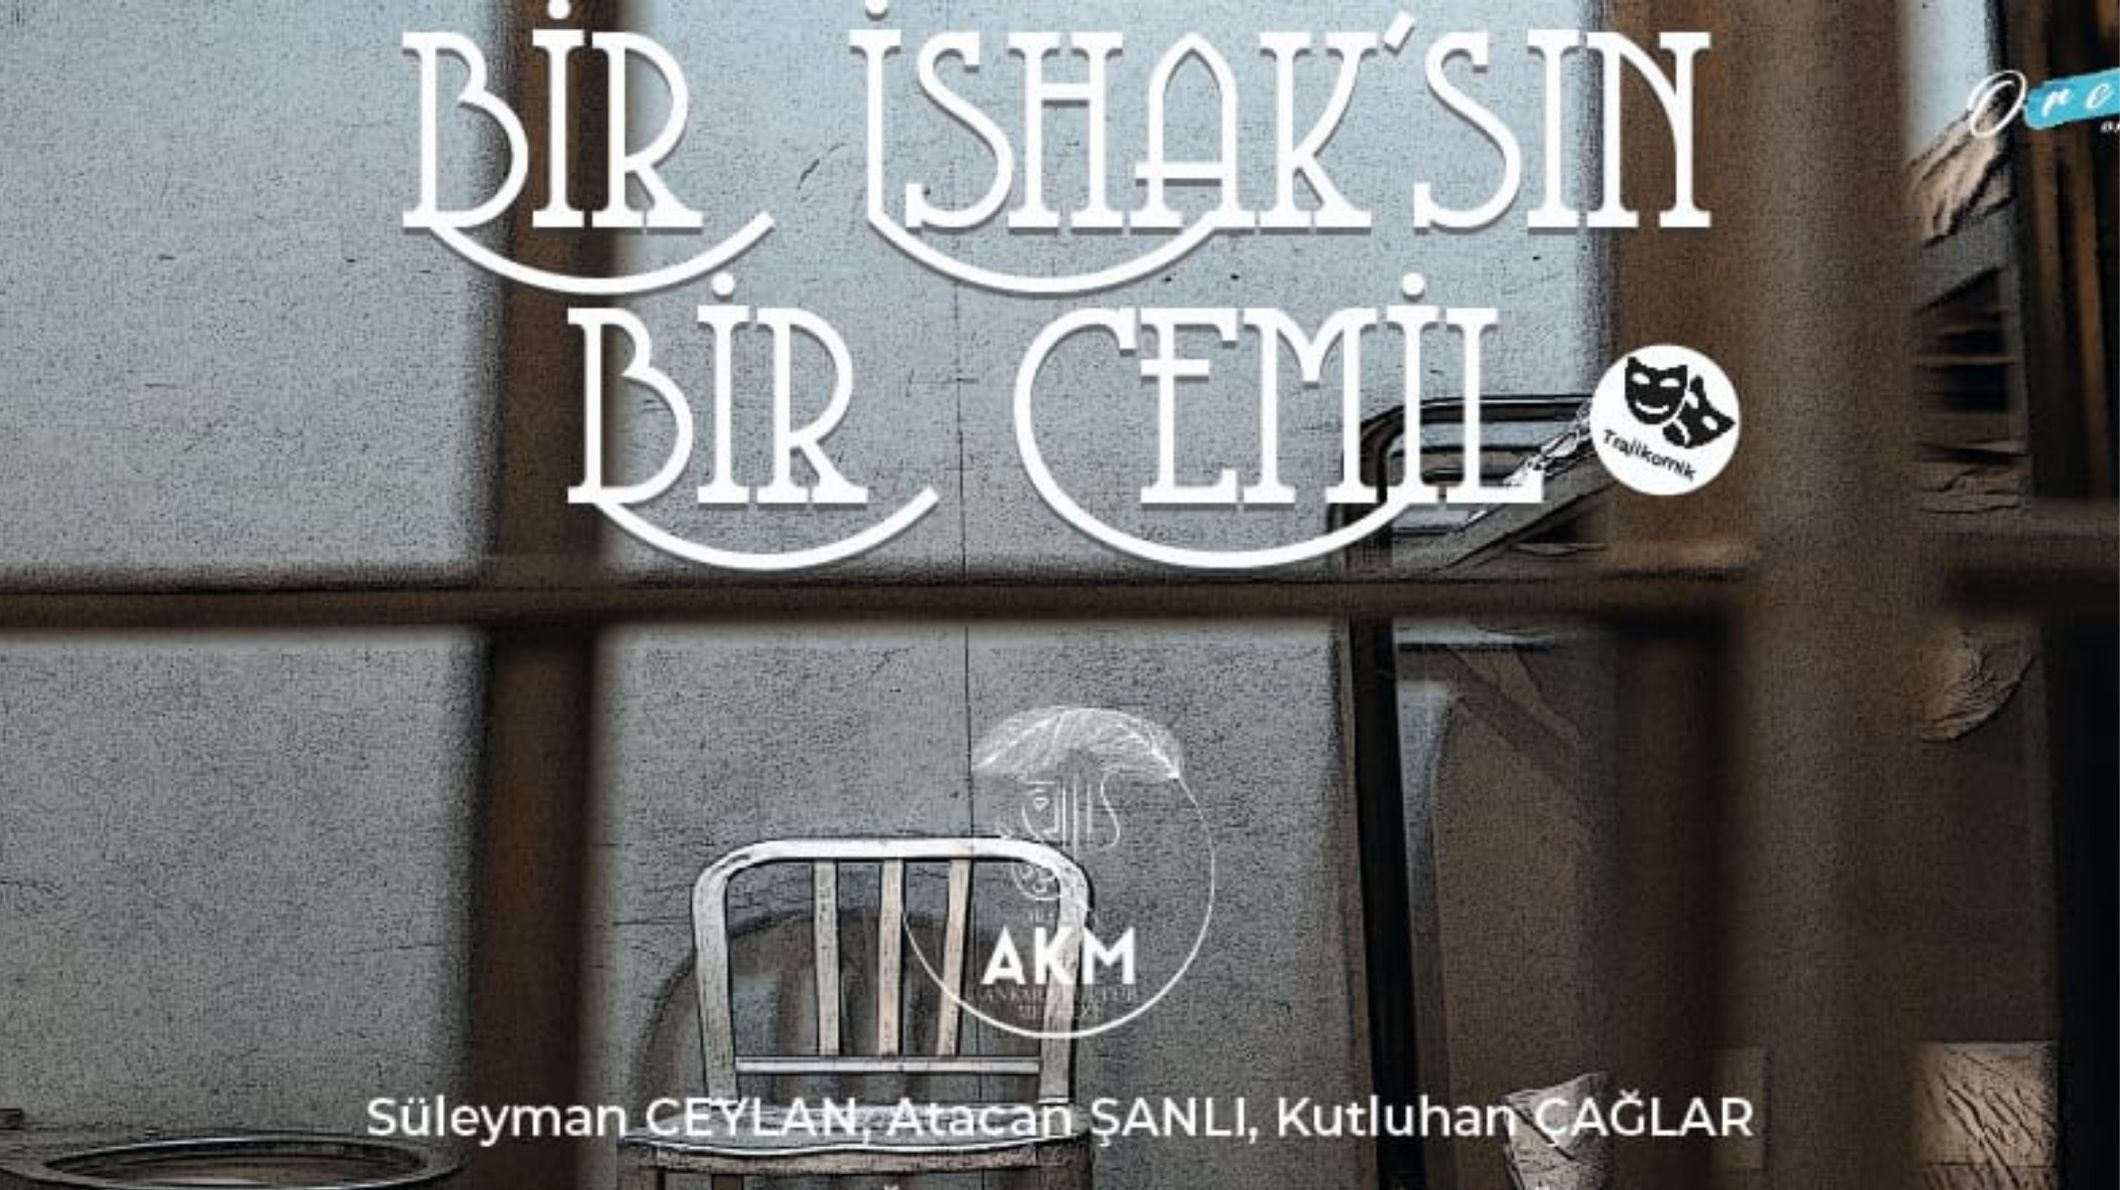 Bir İshak'sın Bir Cemil - Şato Yazar Sahne - Ankara